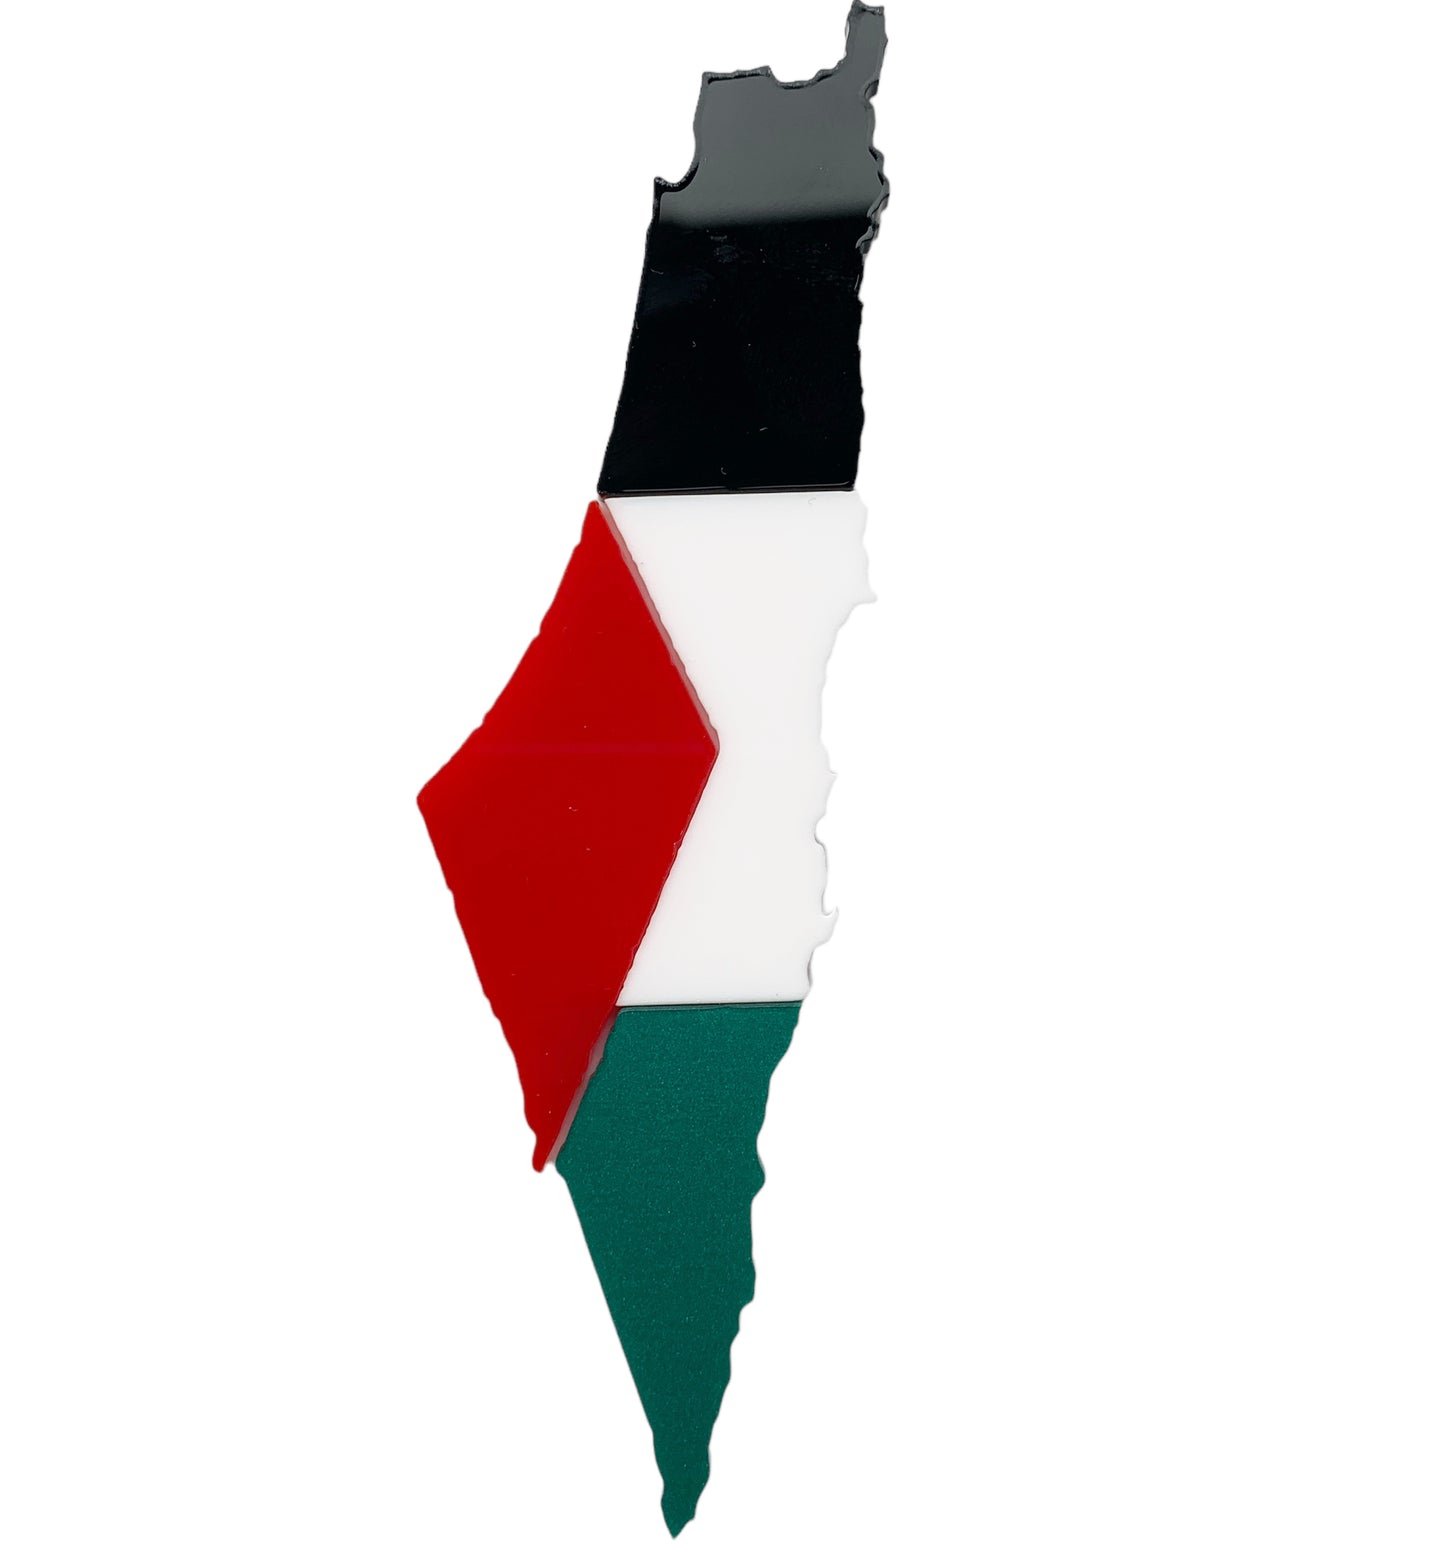 Palestine charm - acrylic 5”